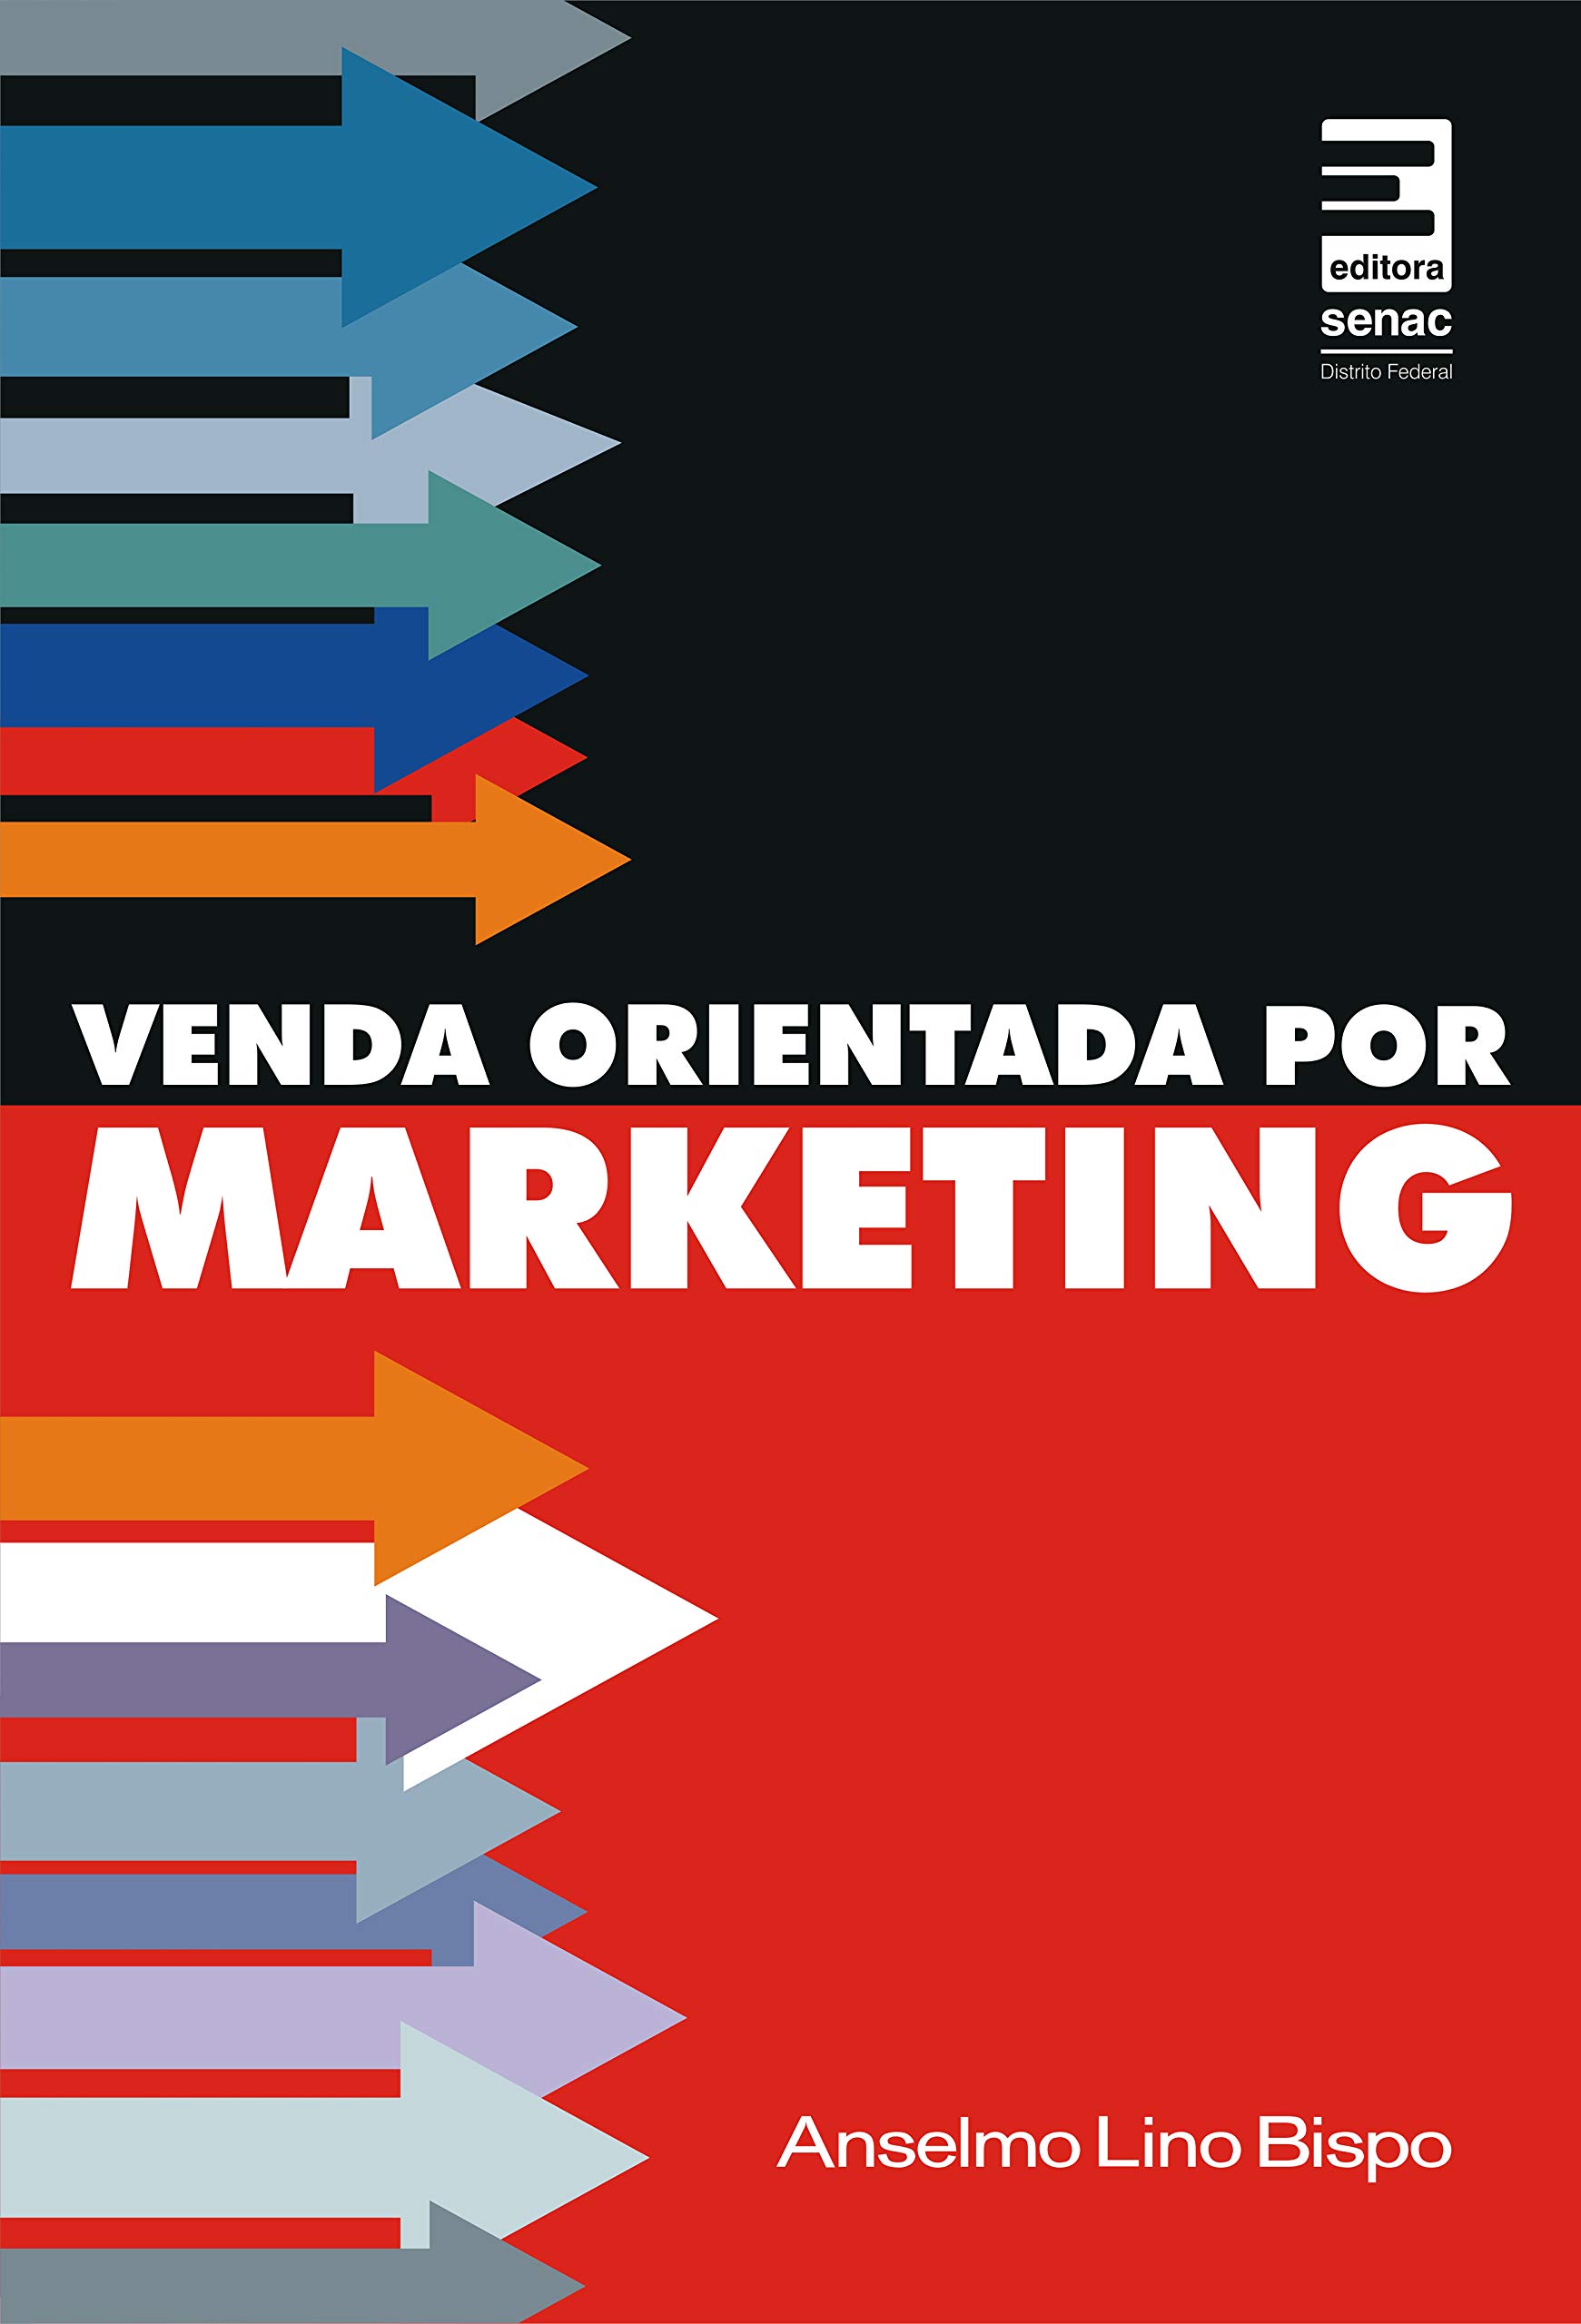 Libro Venda Orientada por Marketing - Anselmo Lino Bispo